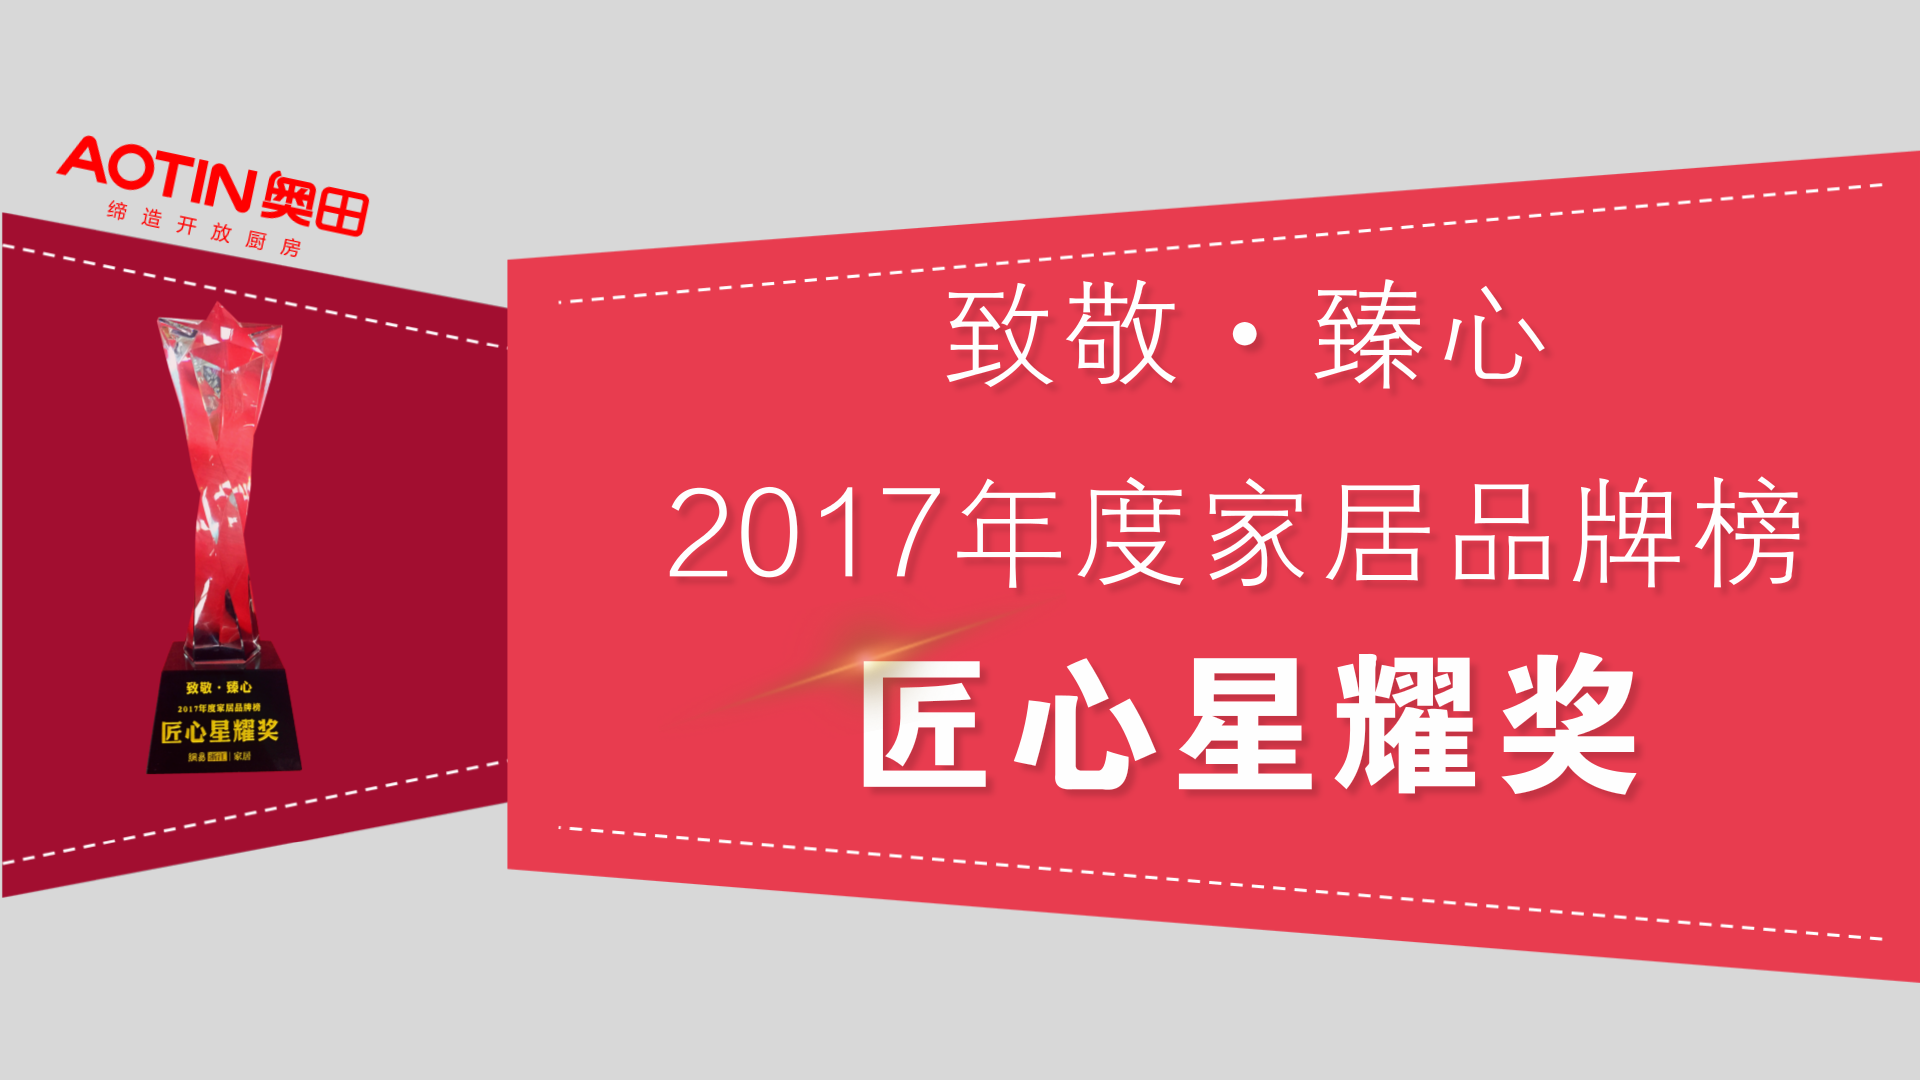 【匠心制造・星耀前行】奥田荣获2017年度家居品牌榜匠心星耀奖！